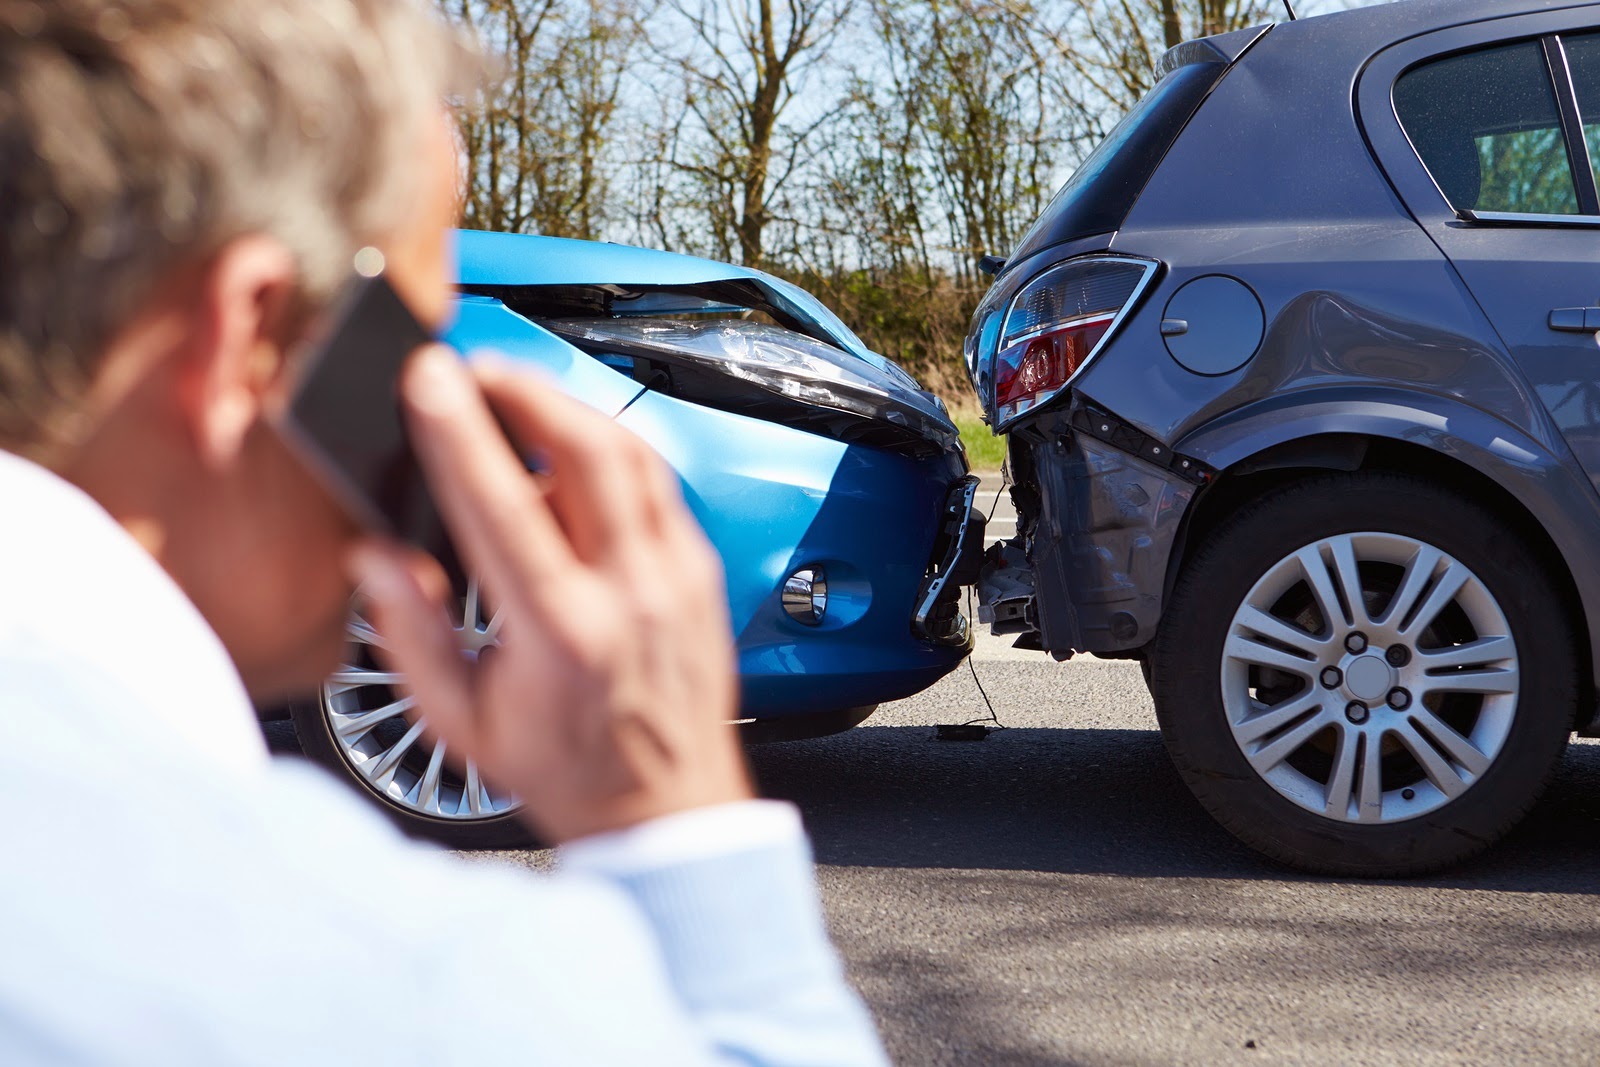 Mua bảo hiểm xe ô tô sẽ giúp bạn giảm thiểu tối đa rủi ro khi gặp tai nạn 